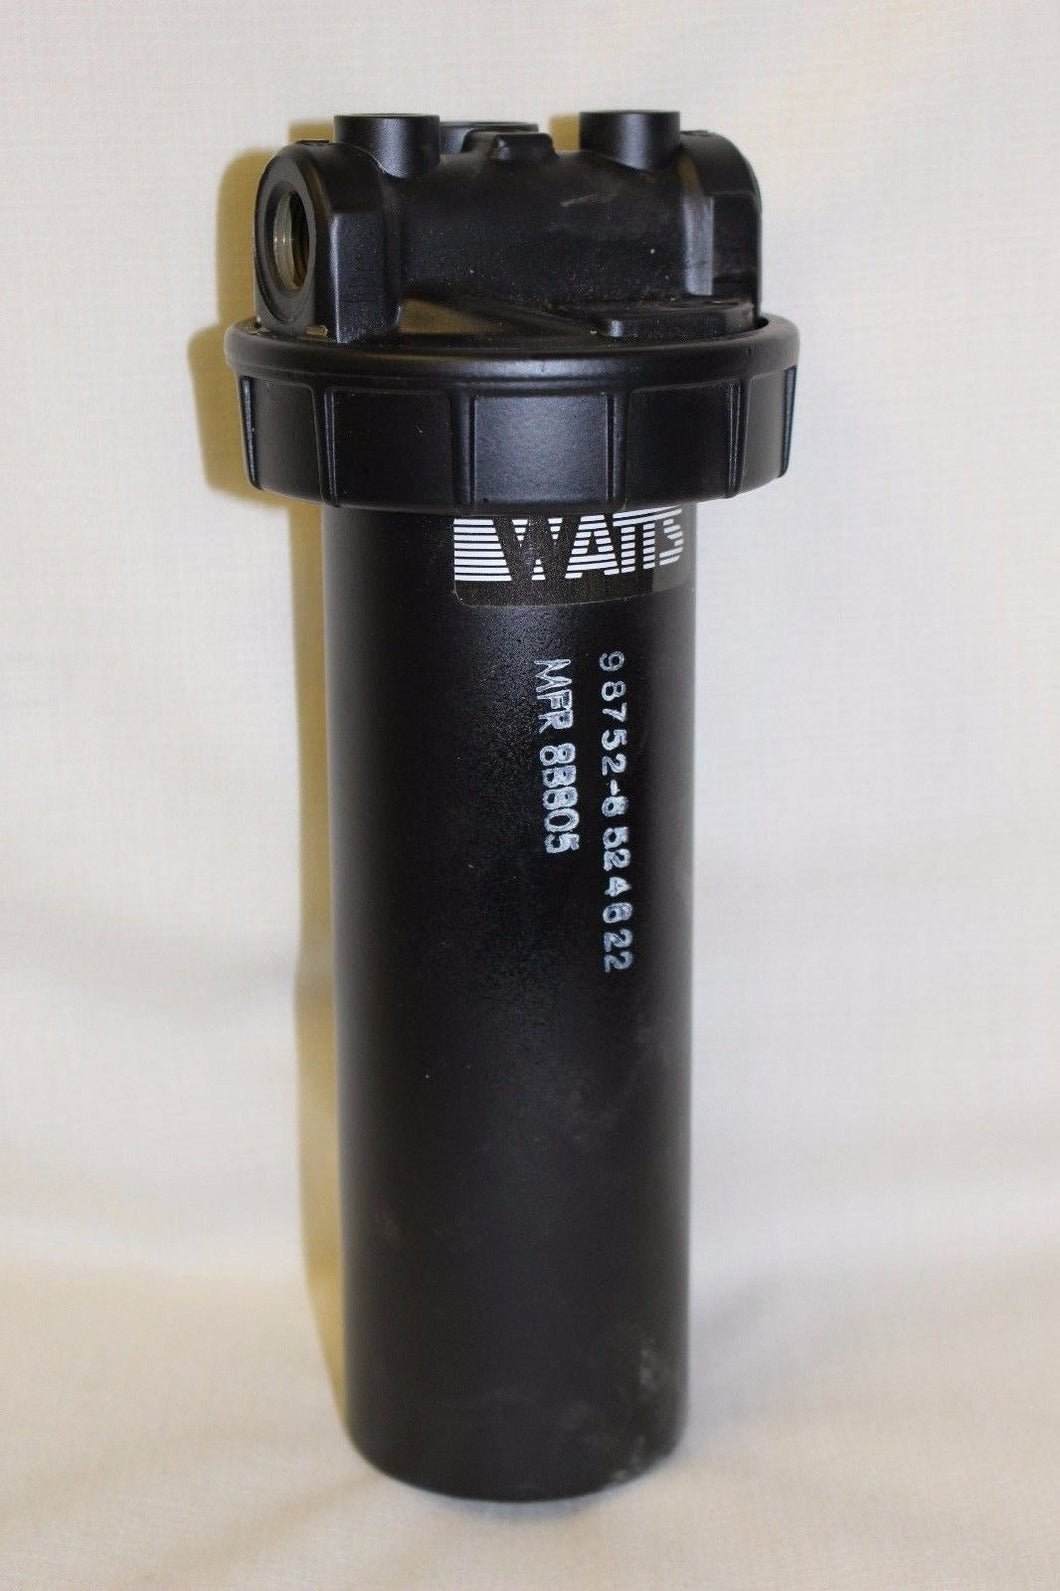 WATTS Fluid Filter - NSN 4330-01-289-4581 - P/N 8524622 / F701-03E7 - New